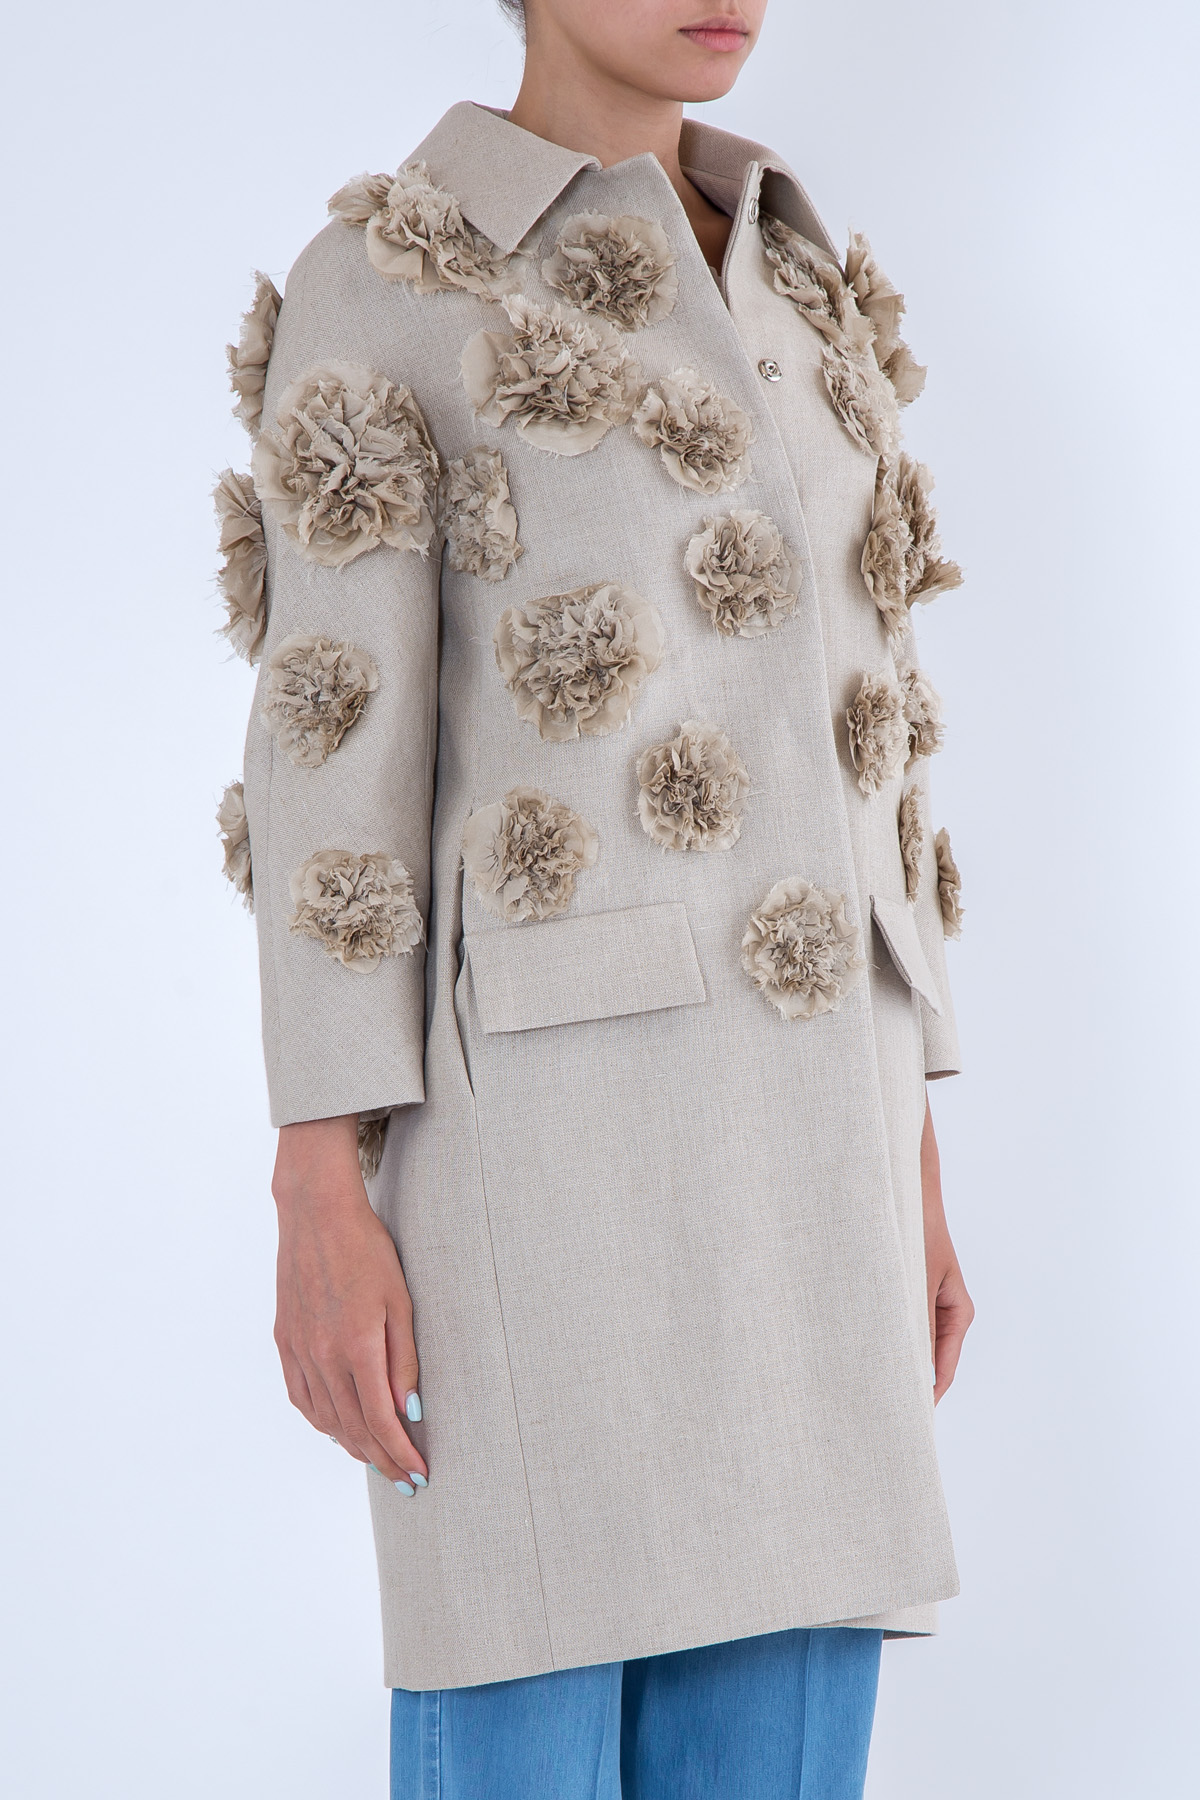 Пальто изо льна с аппликациями в виде цветочных бутонов MICHAEL KORS, размер 2 - фото 3